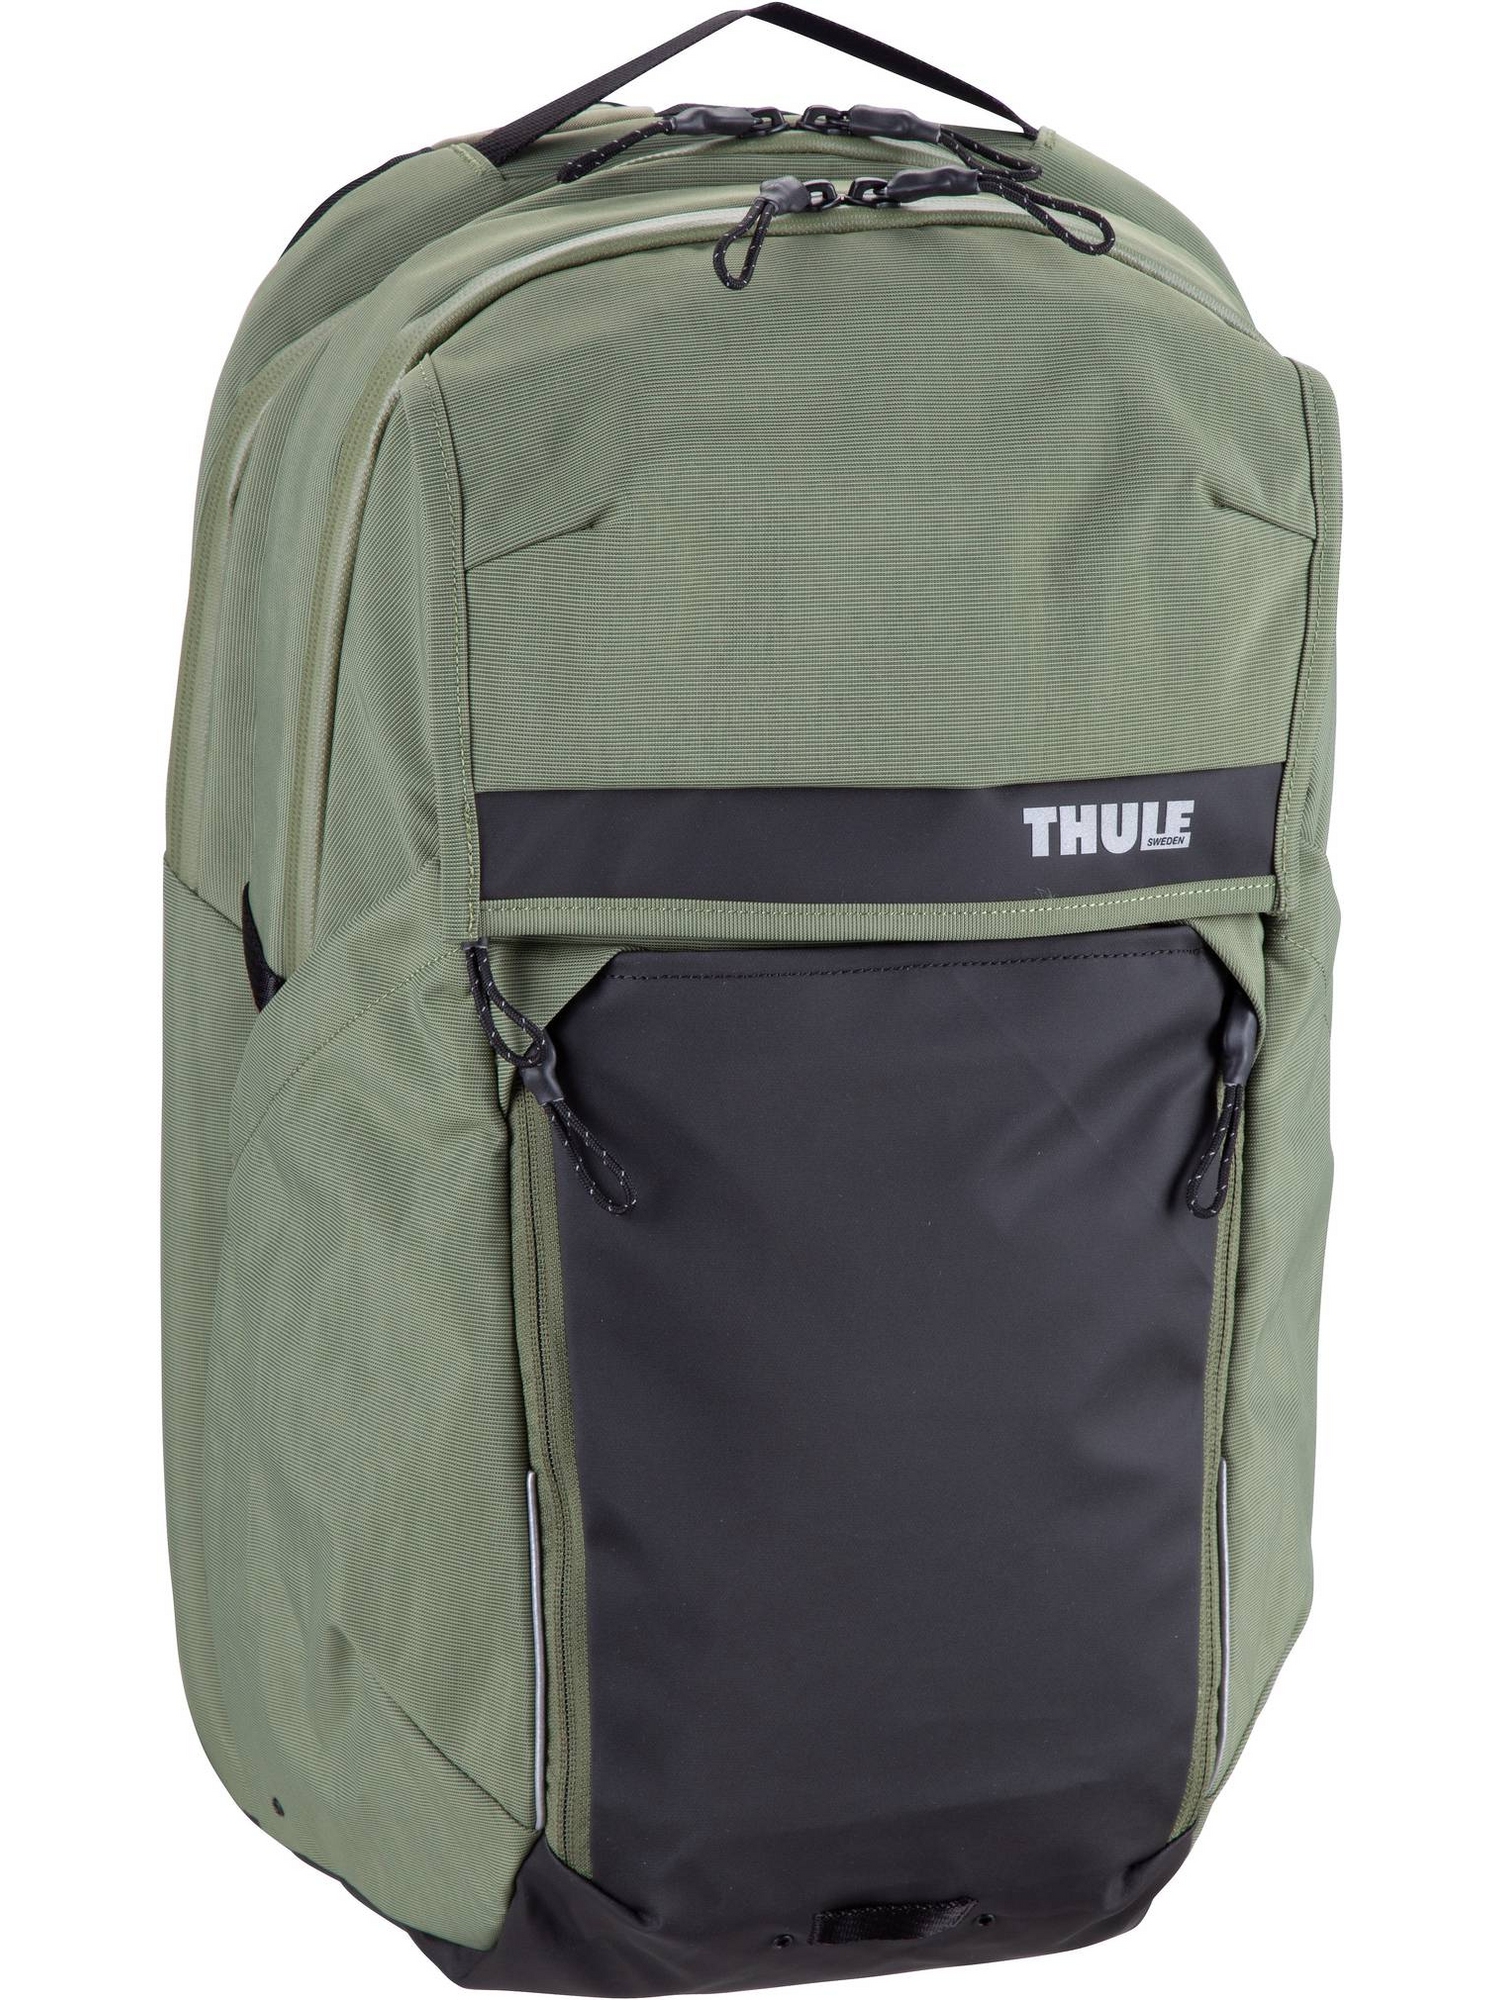 рюкзак thule backpack paramount commuter backpack 18l цвет olivine Рюкзак Thule/Backpack Paramount Commuter Backpack 27L, цвет Olivine